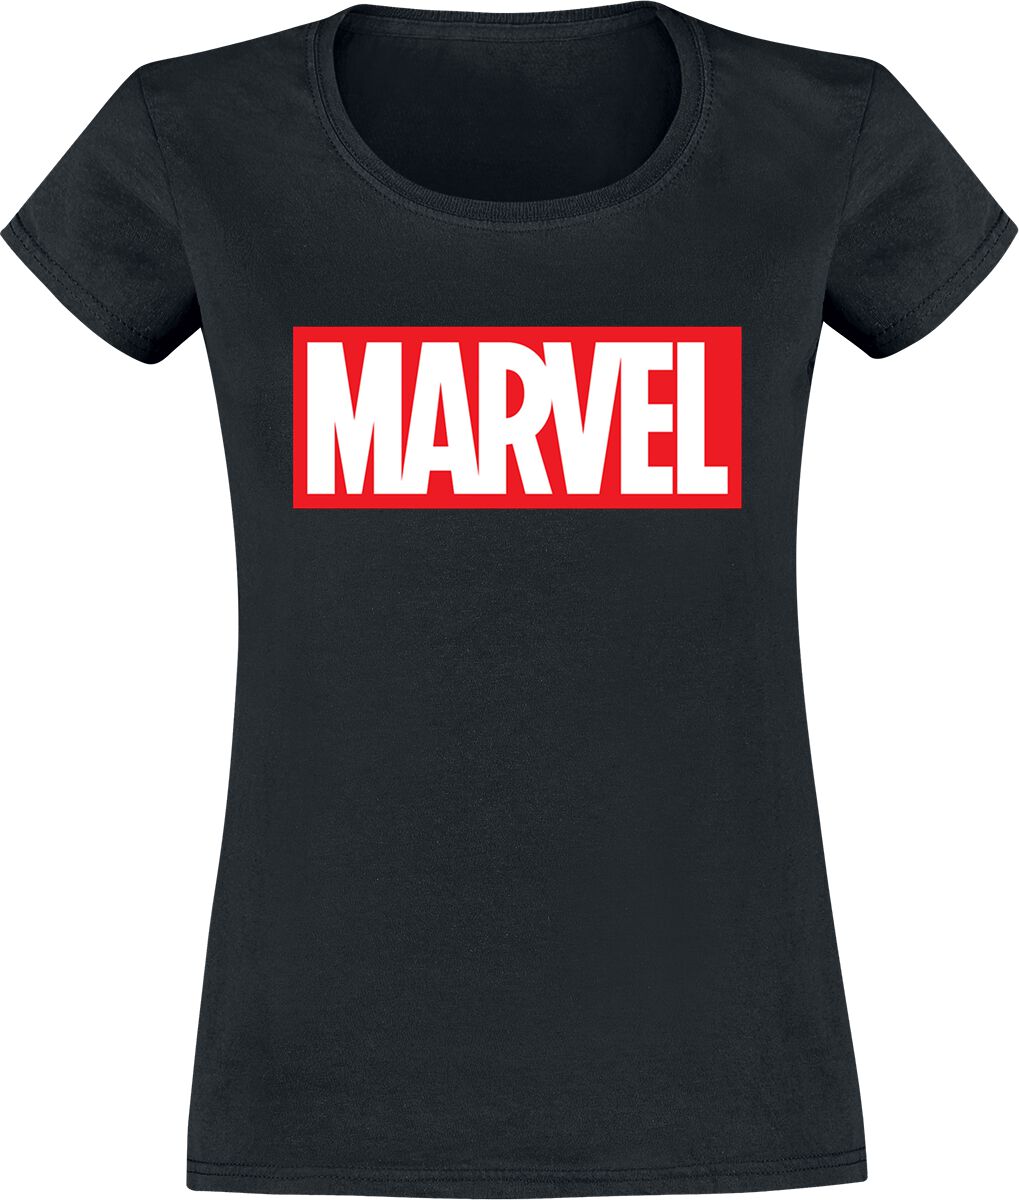 Marvel - Marvel T-Shirt - Logo - XS bis XXL - für Damen - Größe XL - schwarz  - EMP exklusives Merchandise!